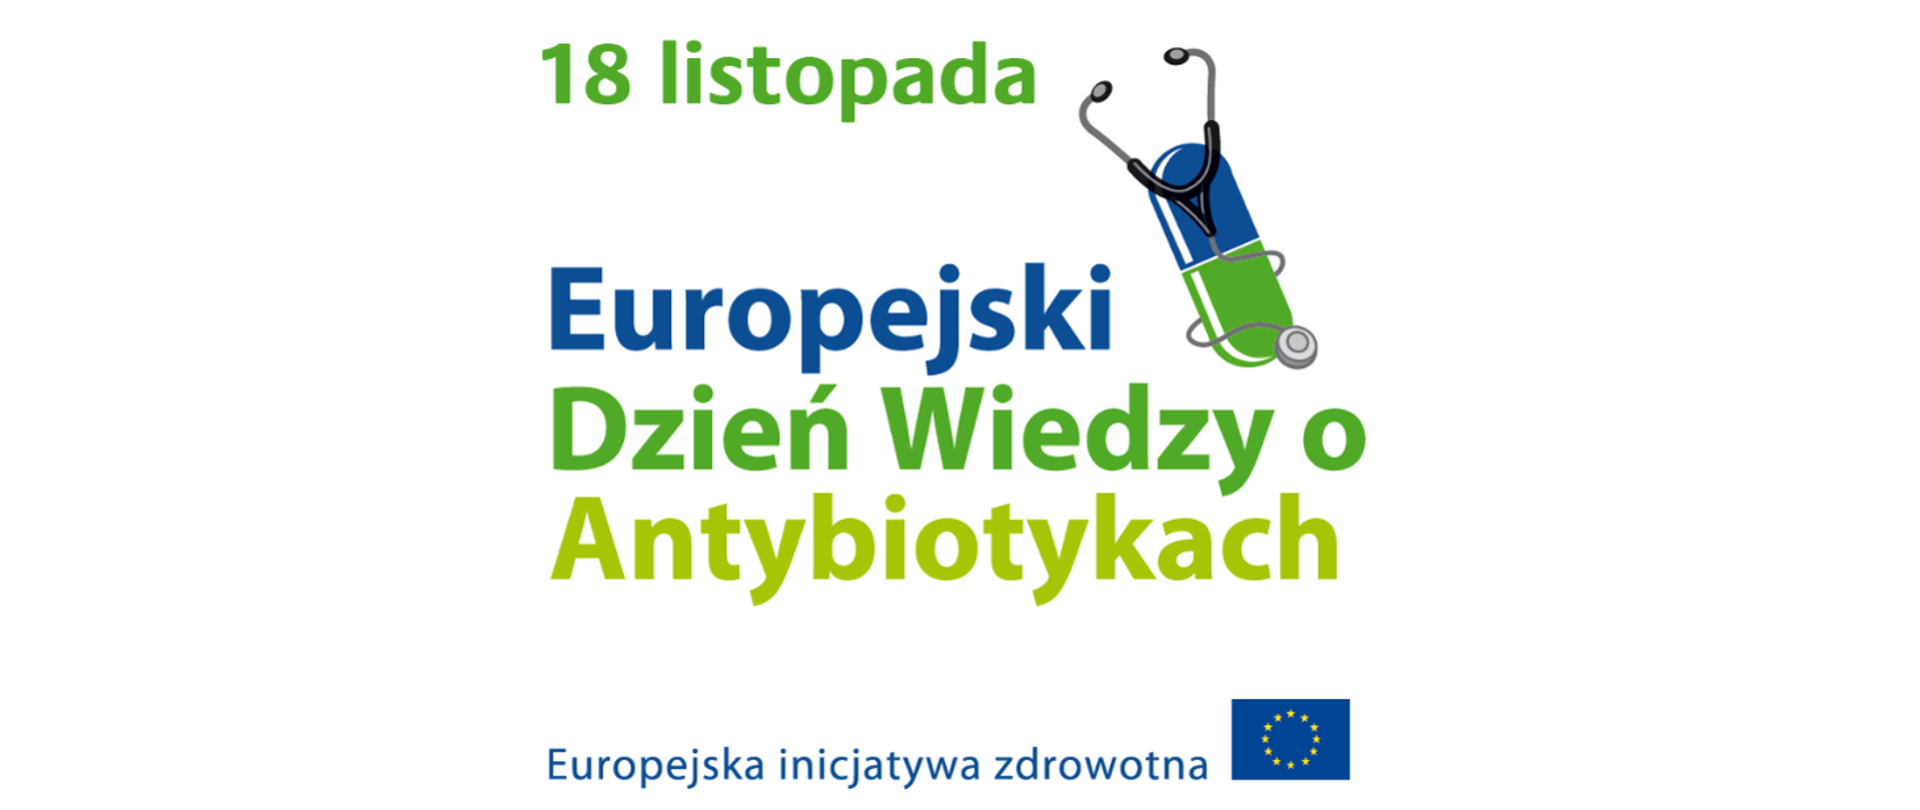 18 listopada. Europejski Dzień Wiedzy o Antybiotykach. Europejska inicjatywa zdrowotna